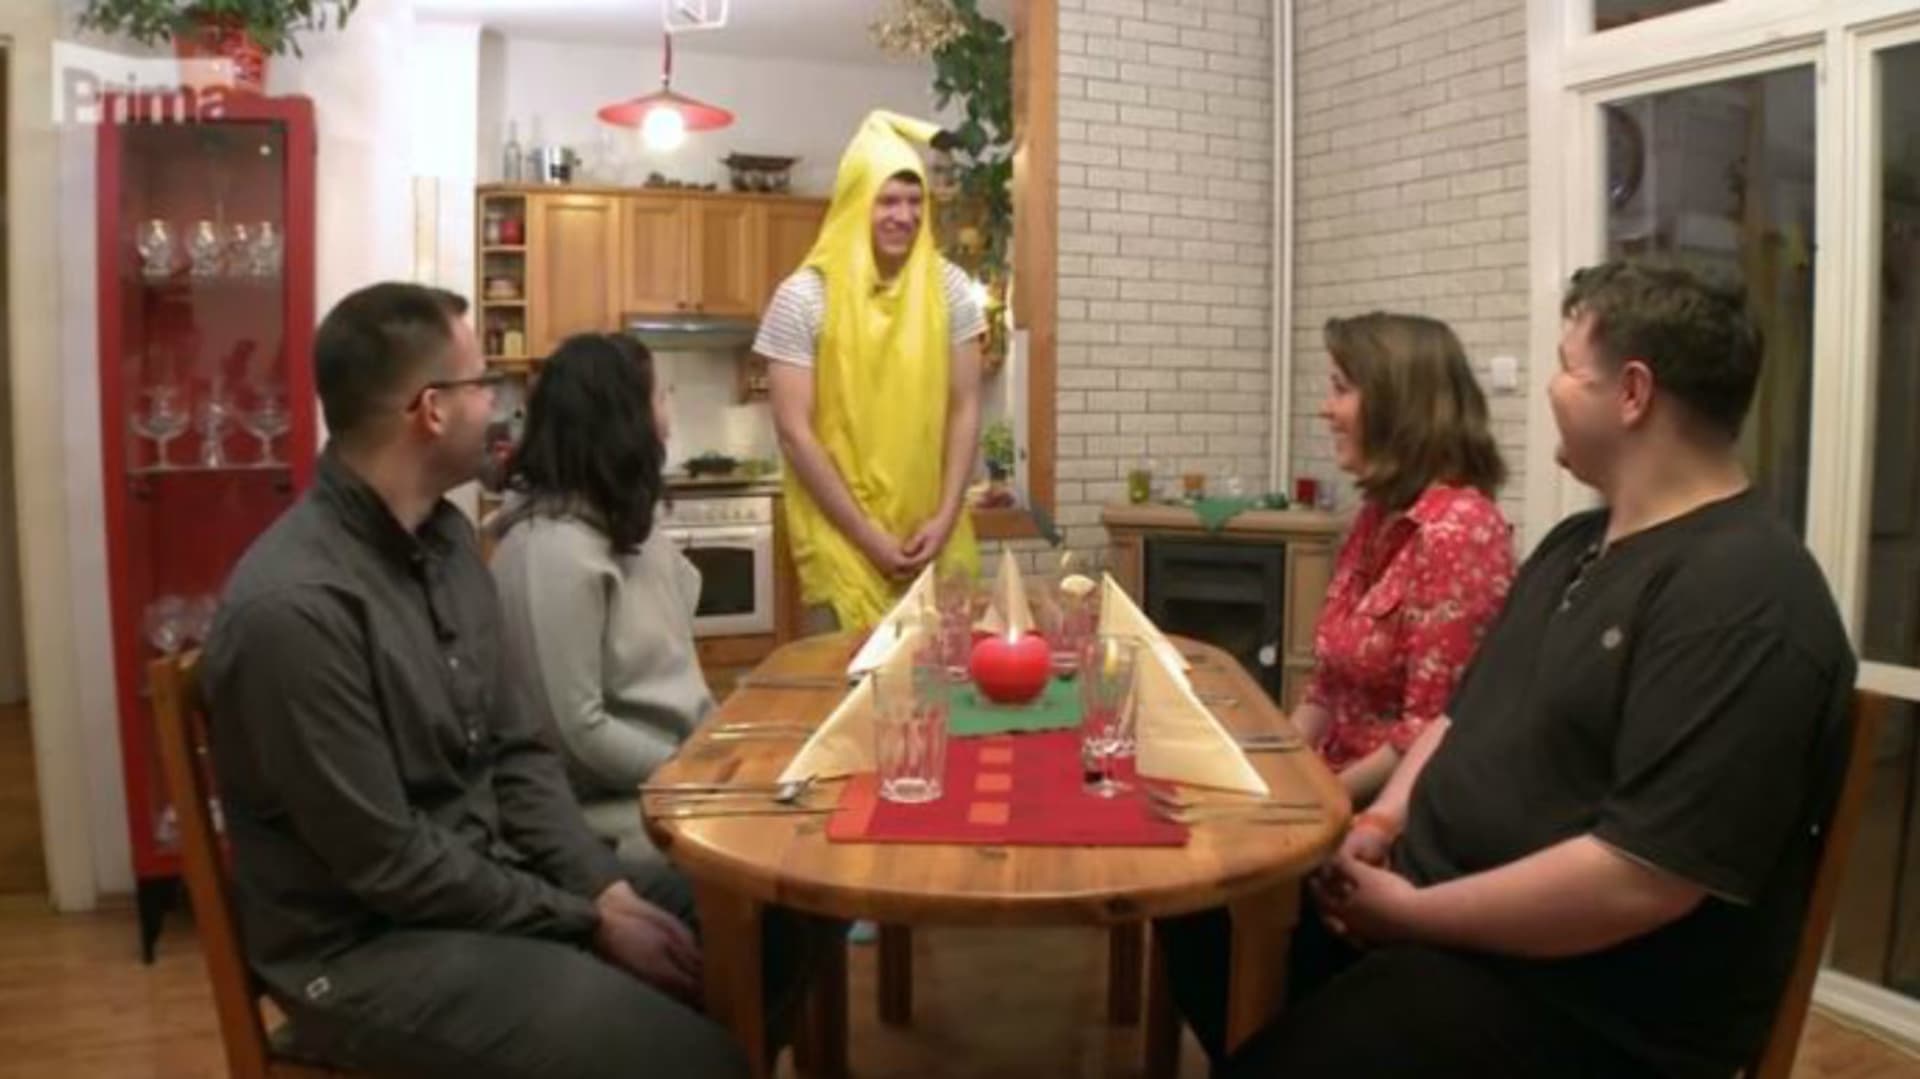 V Prostřeno! hosty přivítá banán 1